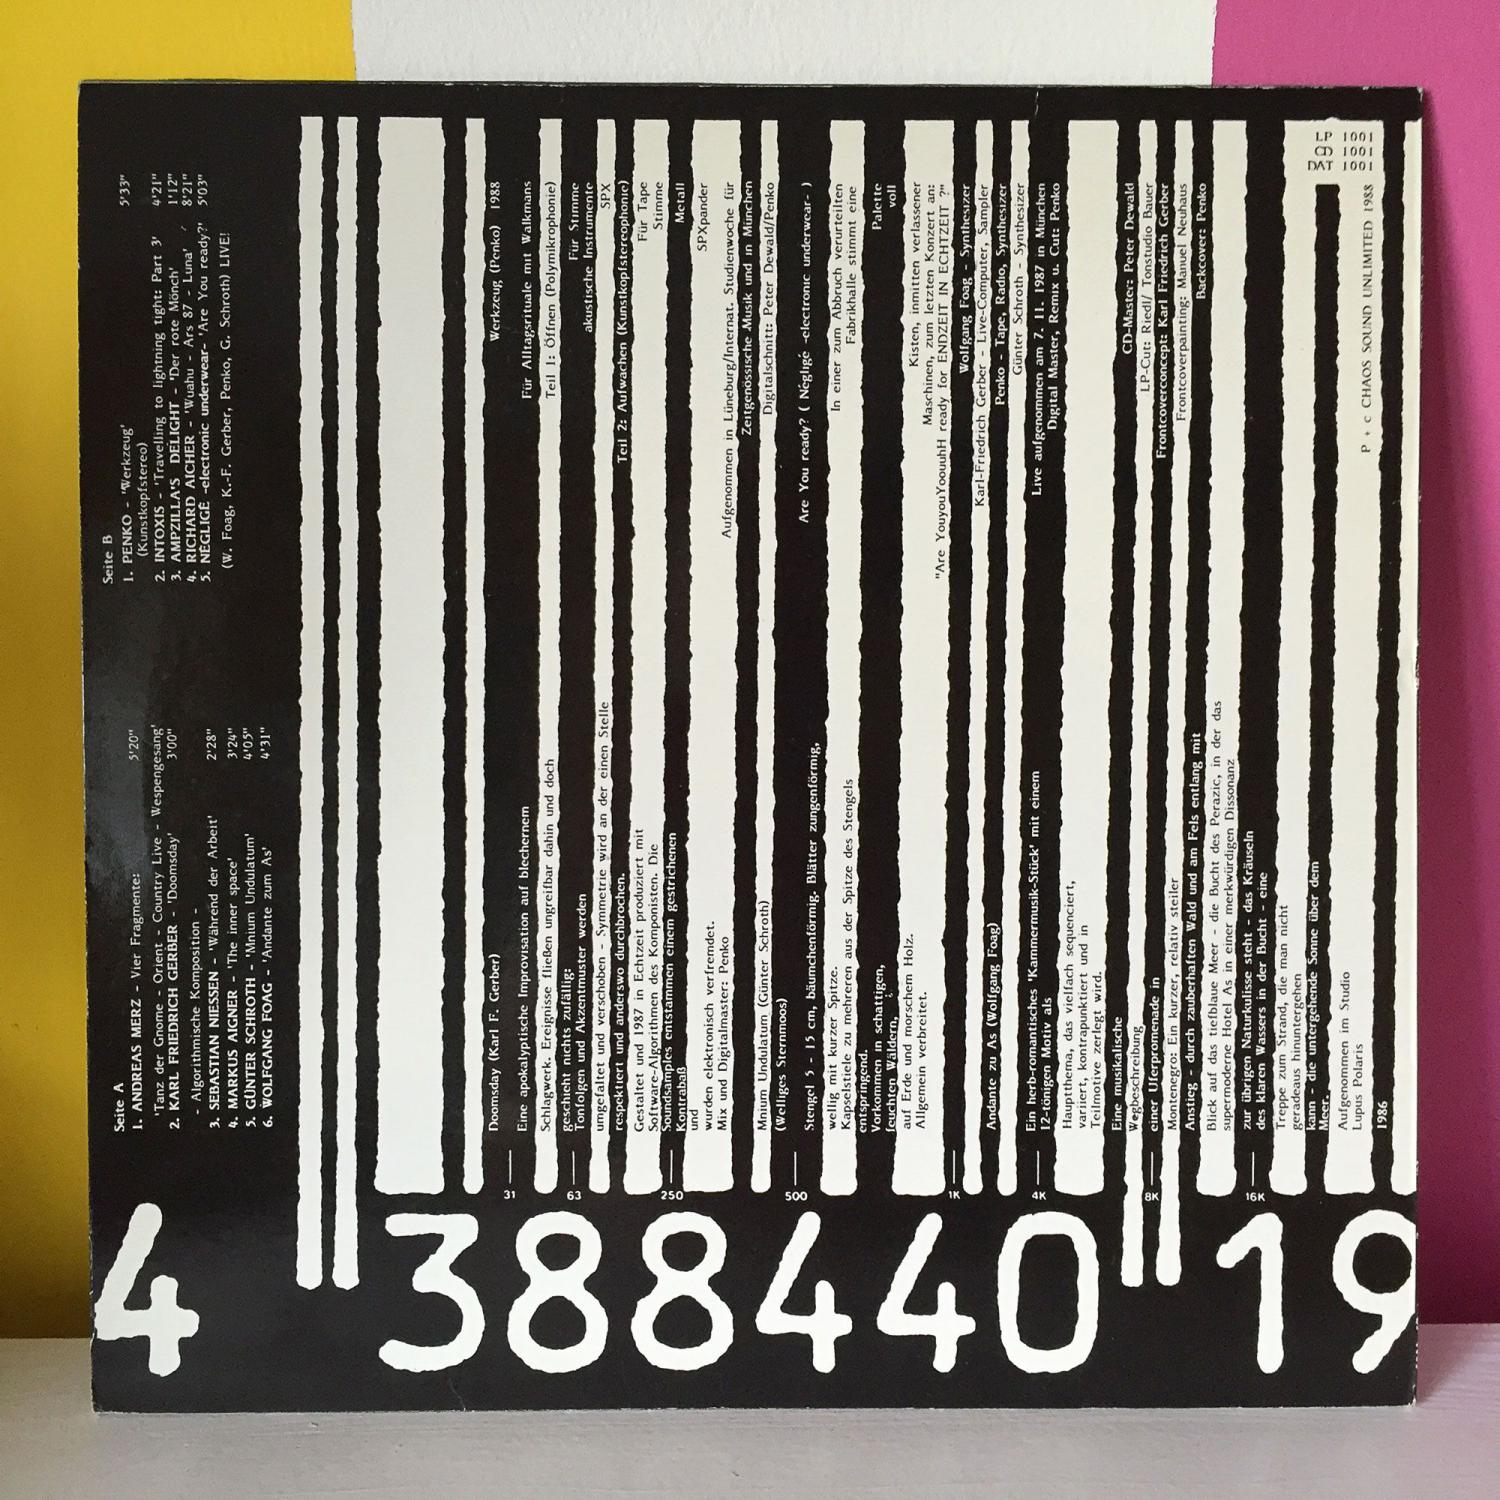 11mal elektronische Musik aus München – LP-Cover back